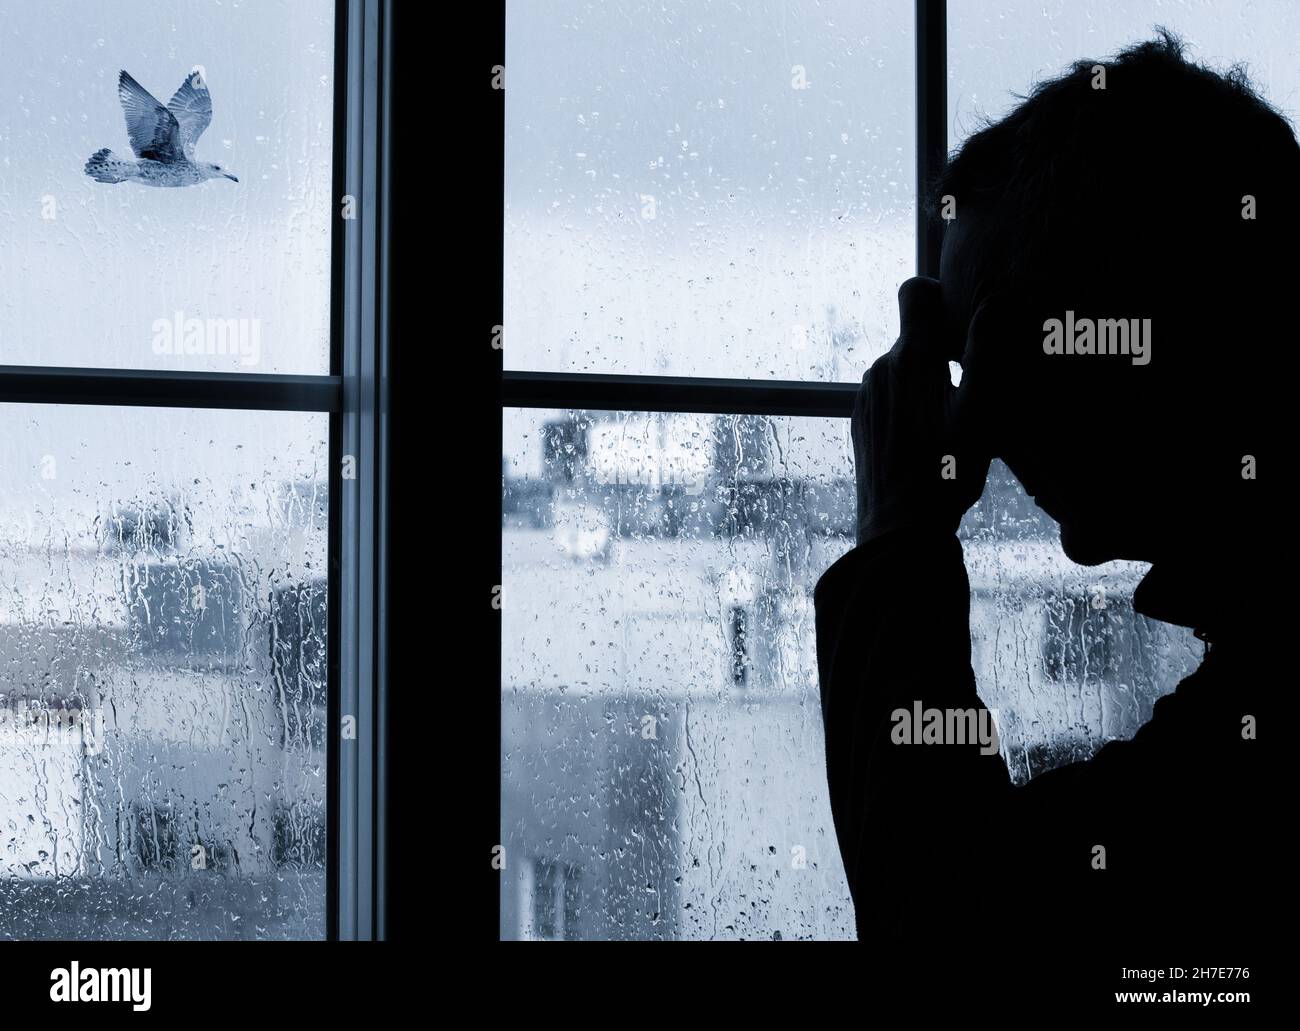 Mann mit der Hand am Kopf in der Nähe des Fensters an einem regnerischen Tag, an dem der Vogel vorbeifliegt. Konzept für Depressionen, Depressionen bei Männern, psychische Gesundheit, psychische Erkrankungen... Stockfoto